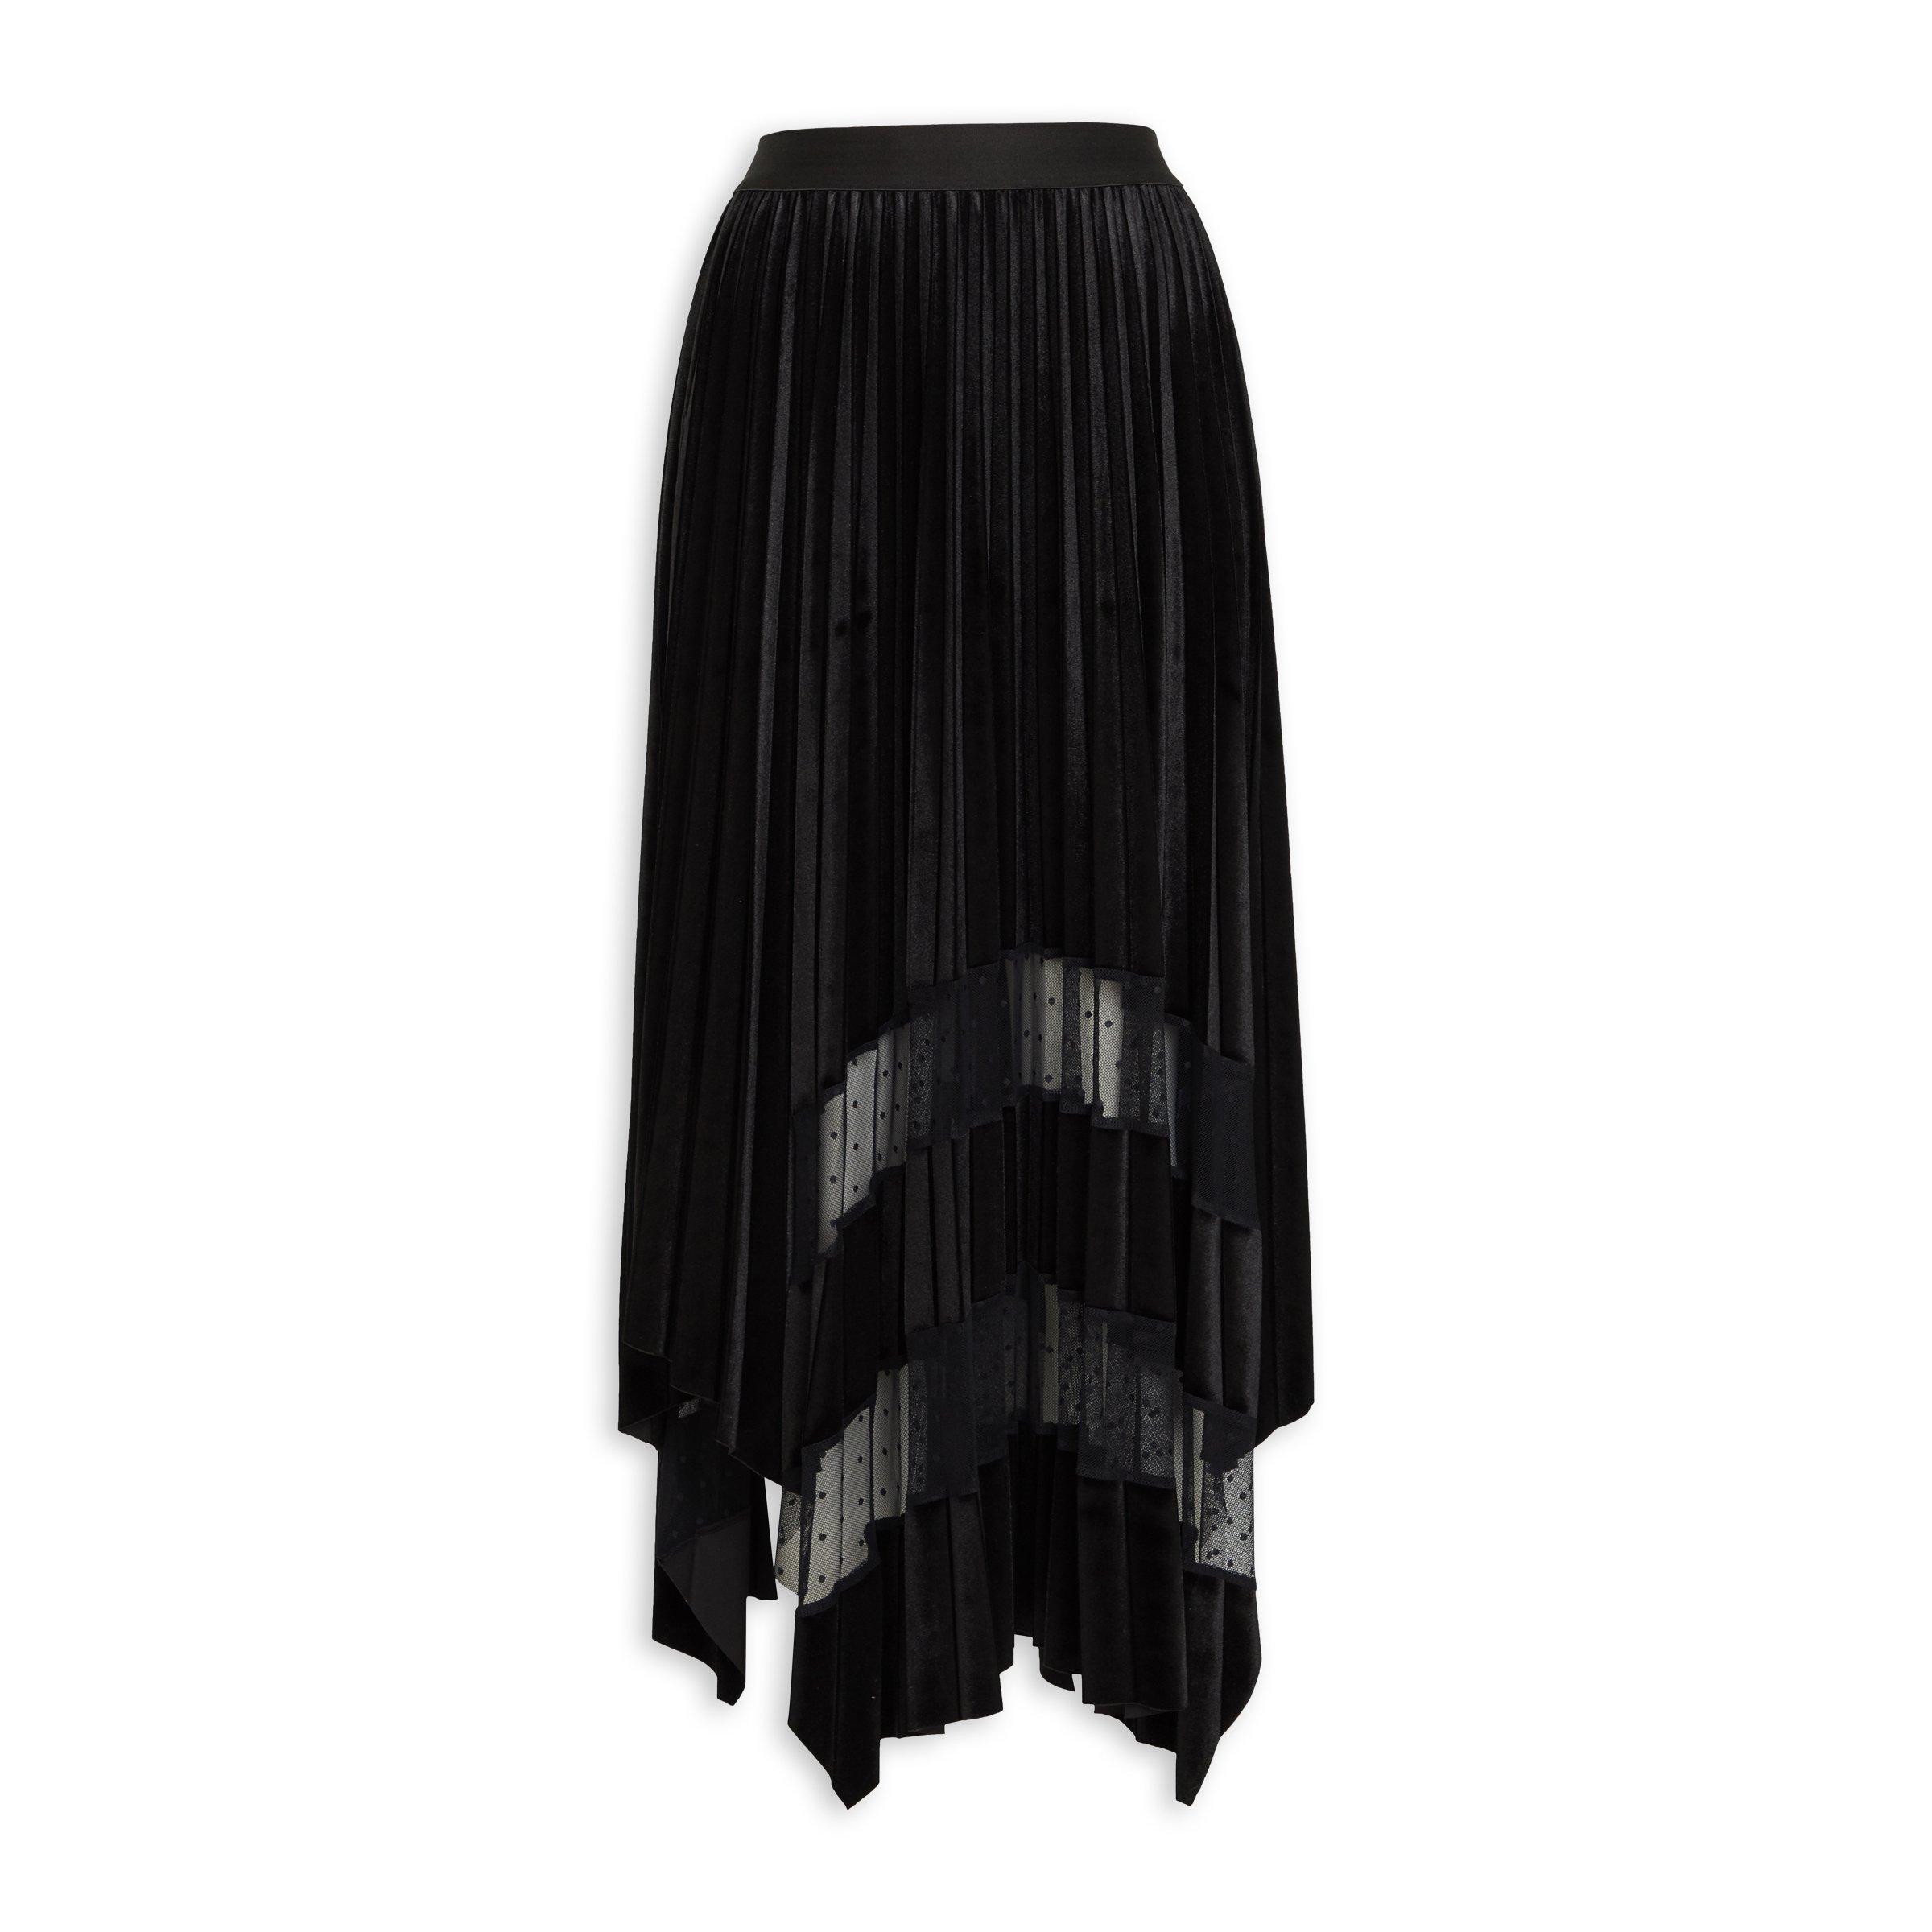 Buy Truworths Black Velour Skirt Online | Truworths